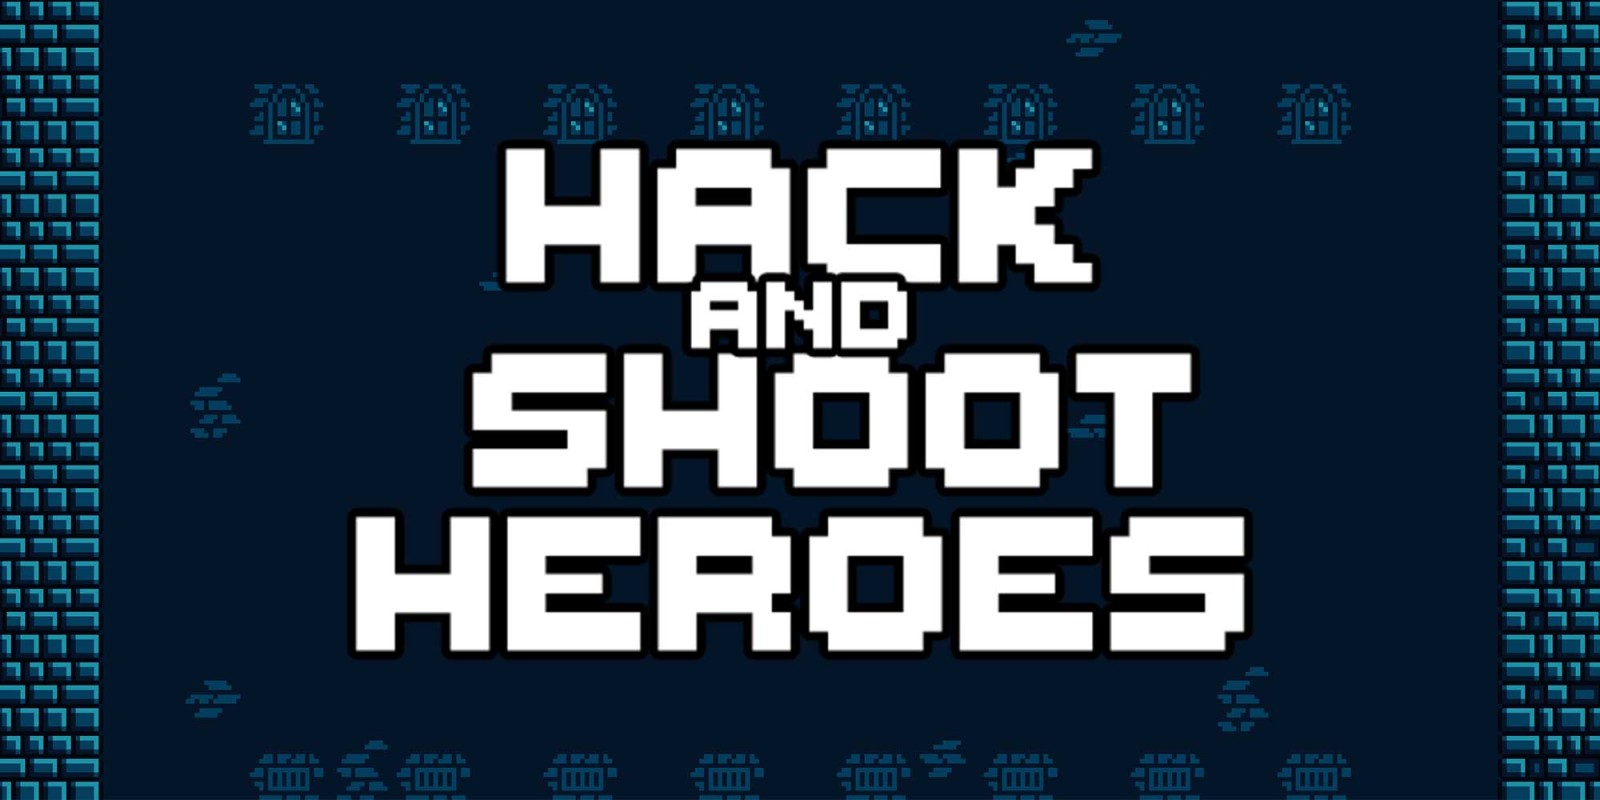 Hack and Shoot Heroes, Aplicações de download da Nintendo Switch, Jogos